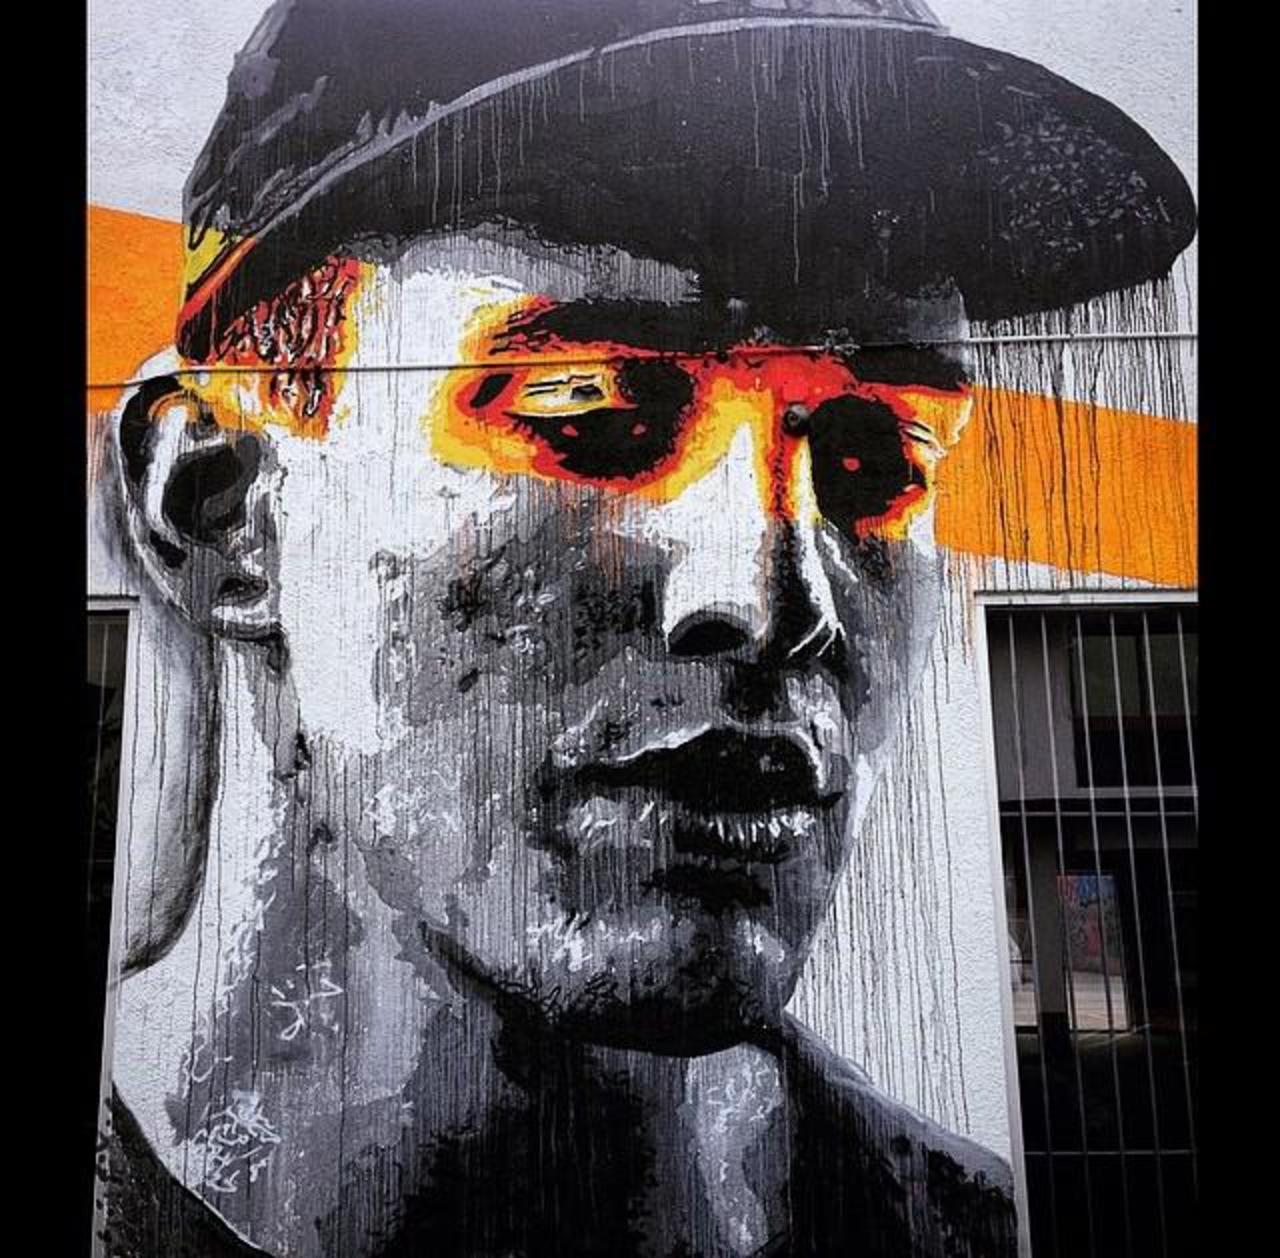 Artist Nils Westergard Street Art portrait in Miami 

#art #graffiti #mural #streetart http://t.co/Q63qgJ2IWi